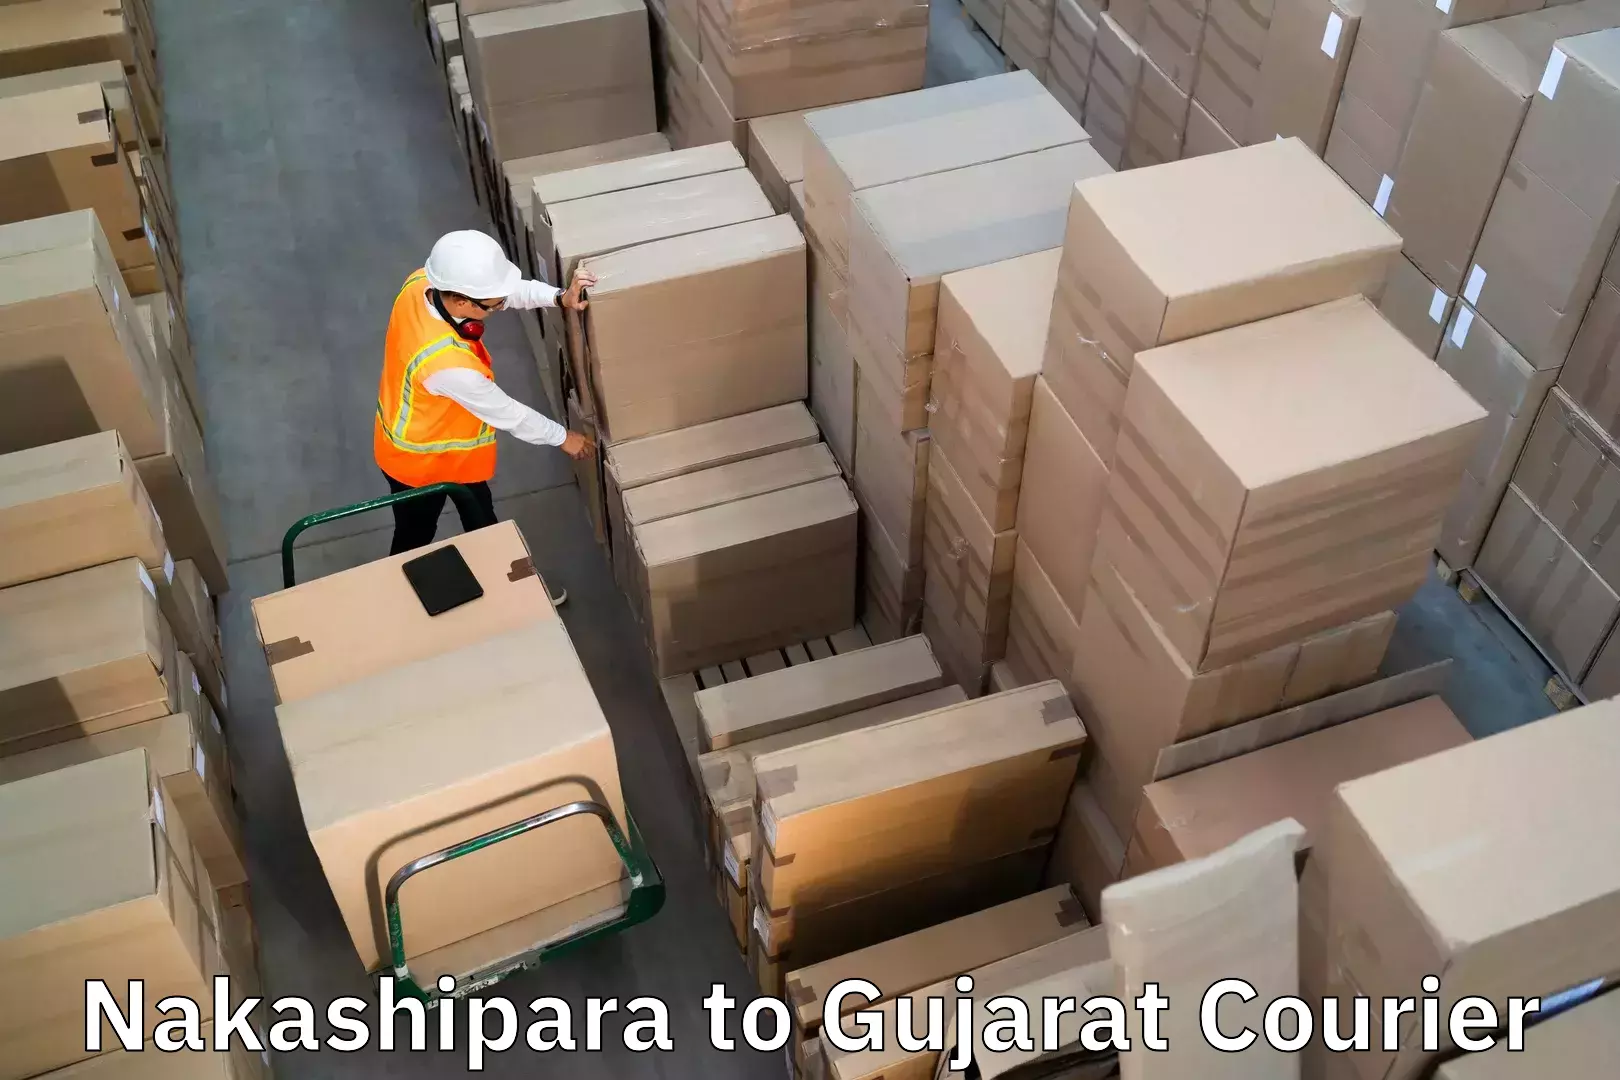 Affordable luggage shipping in Nakashipara to Rajpipla